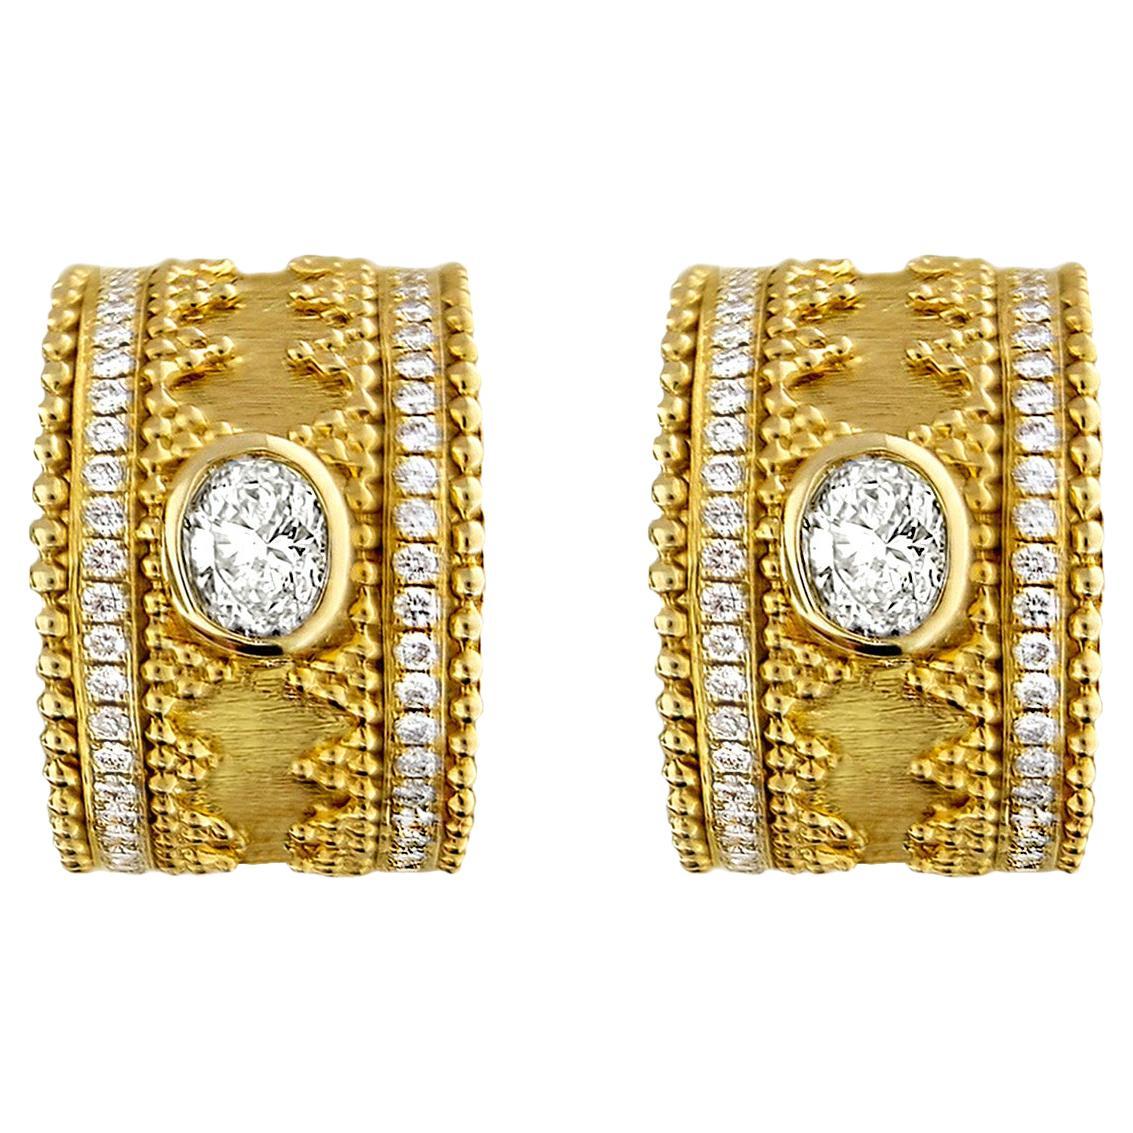 18 Karat Gold Granulata Style Diamond Earrings For Sale